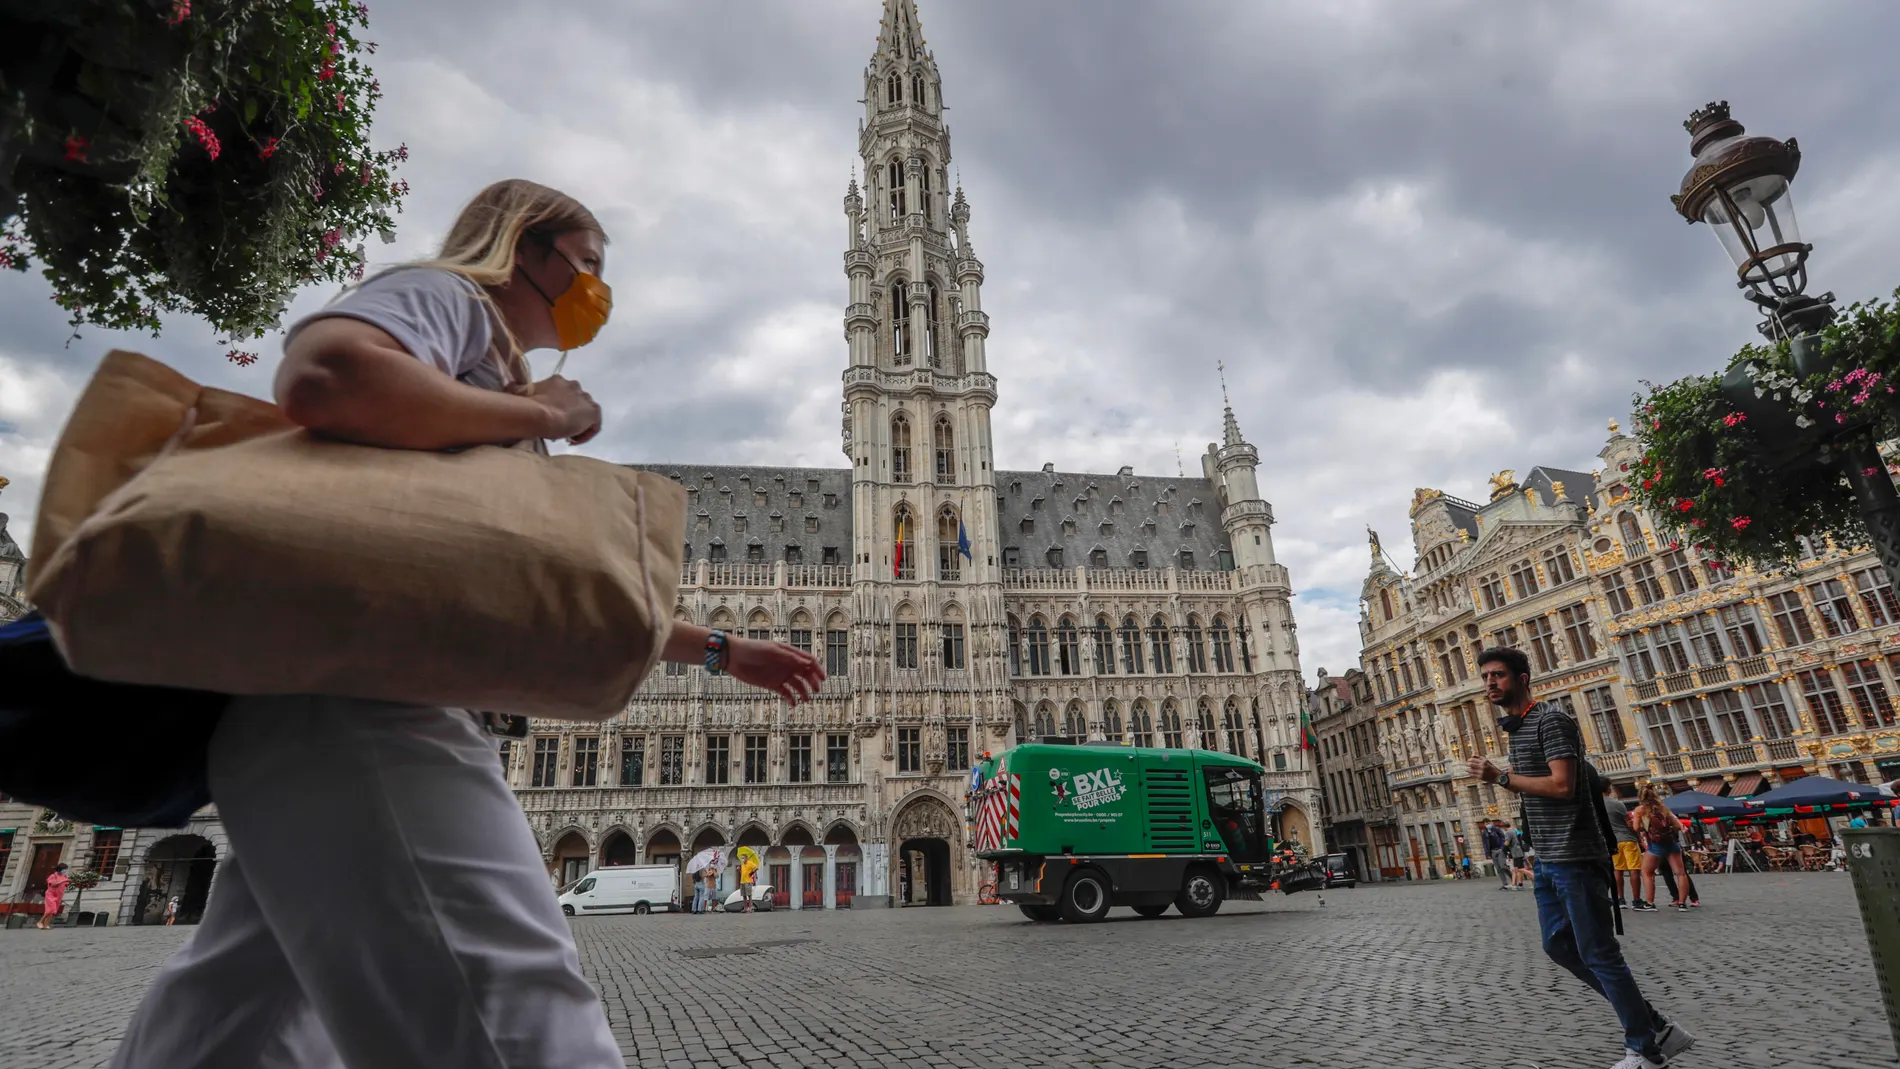 Daily life amid coronavirus pandemic in Belgium